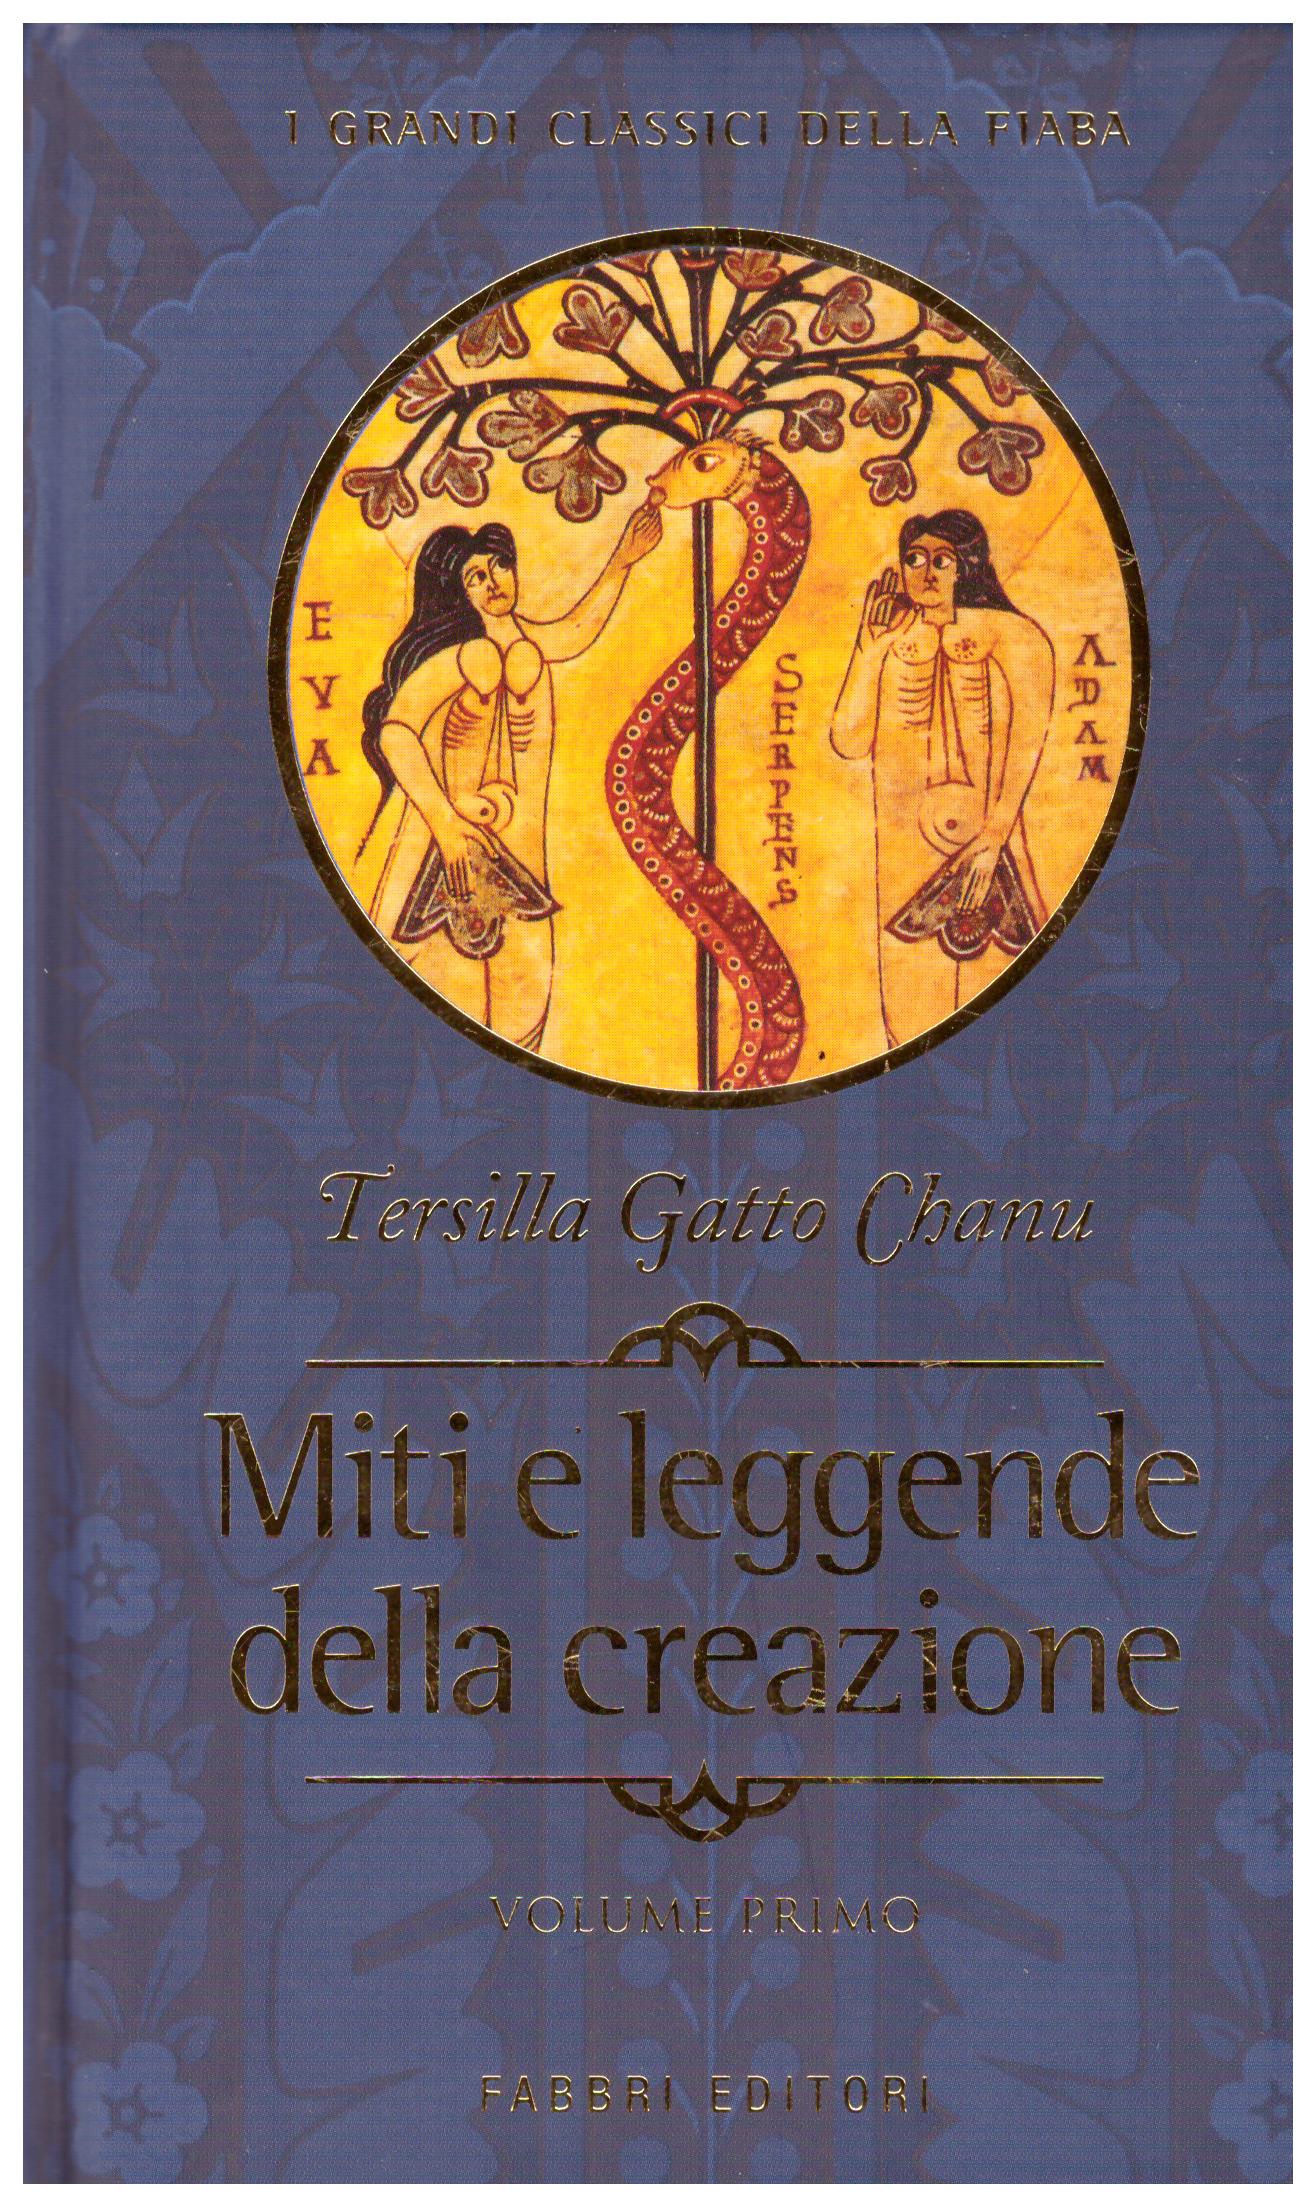 Titolo: I Grandi Classici della Fiaba: Miti e leggende della creazione     Autore: Karoly Kerènyi     Editore: Fabbri Editori